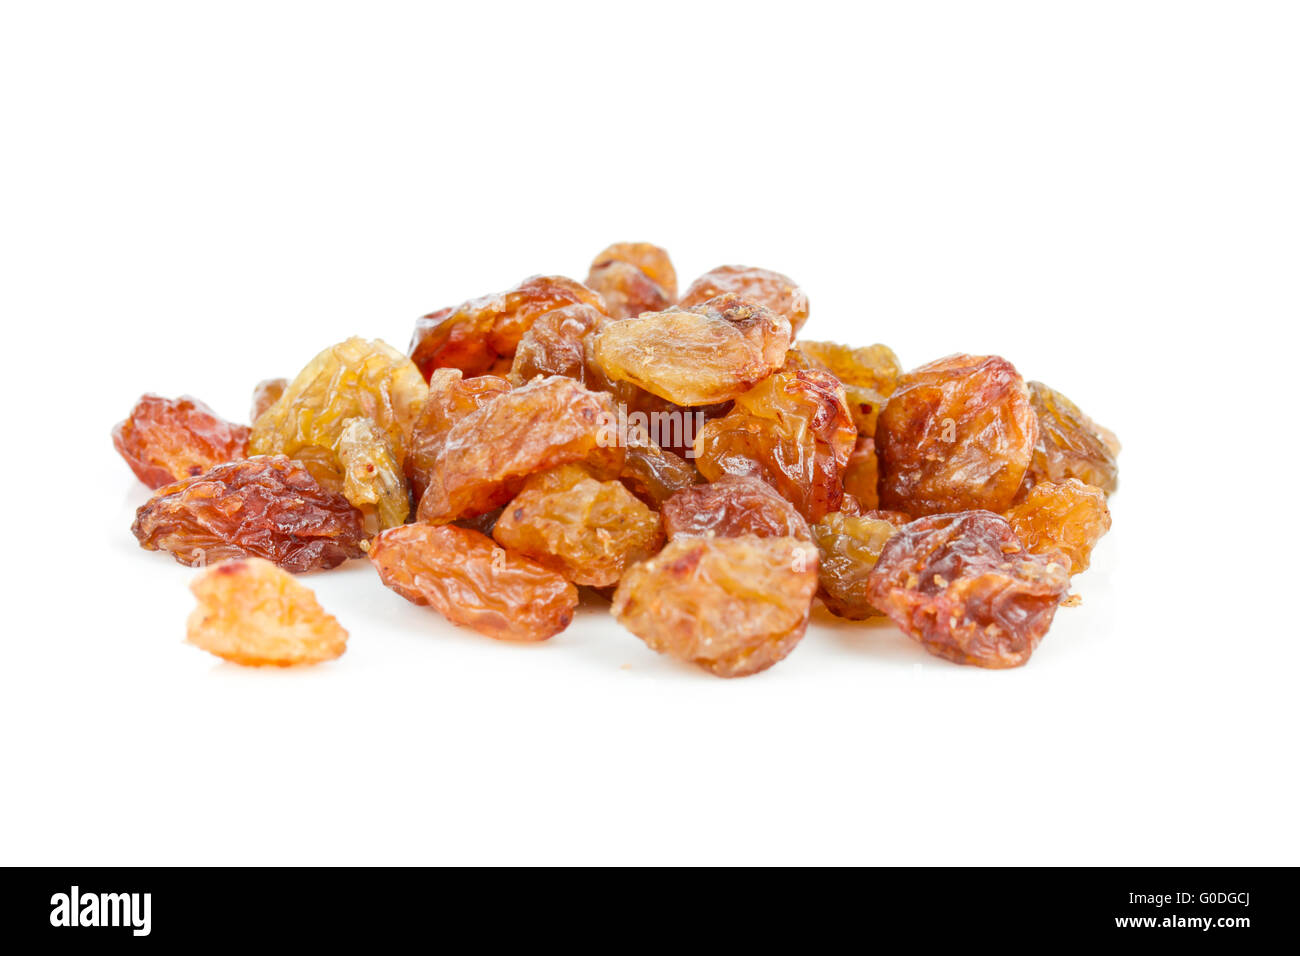 raisins Stock Photo